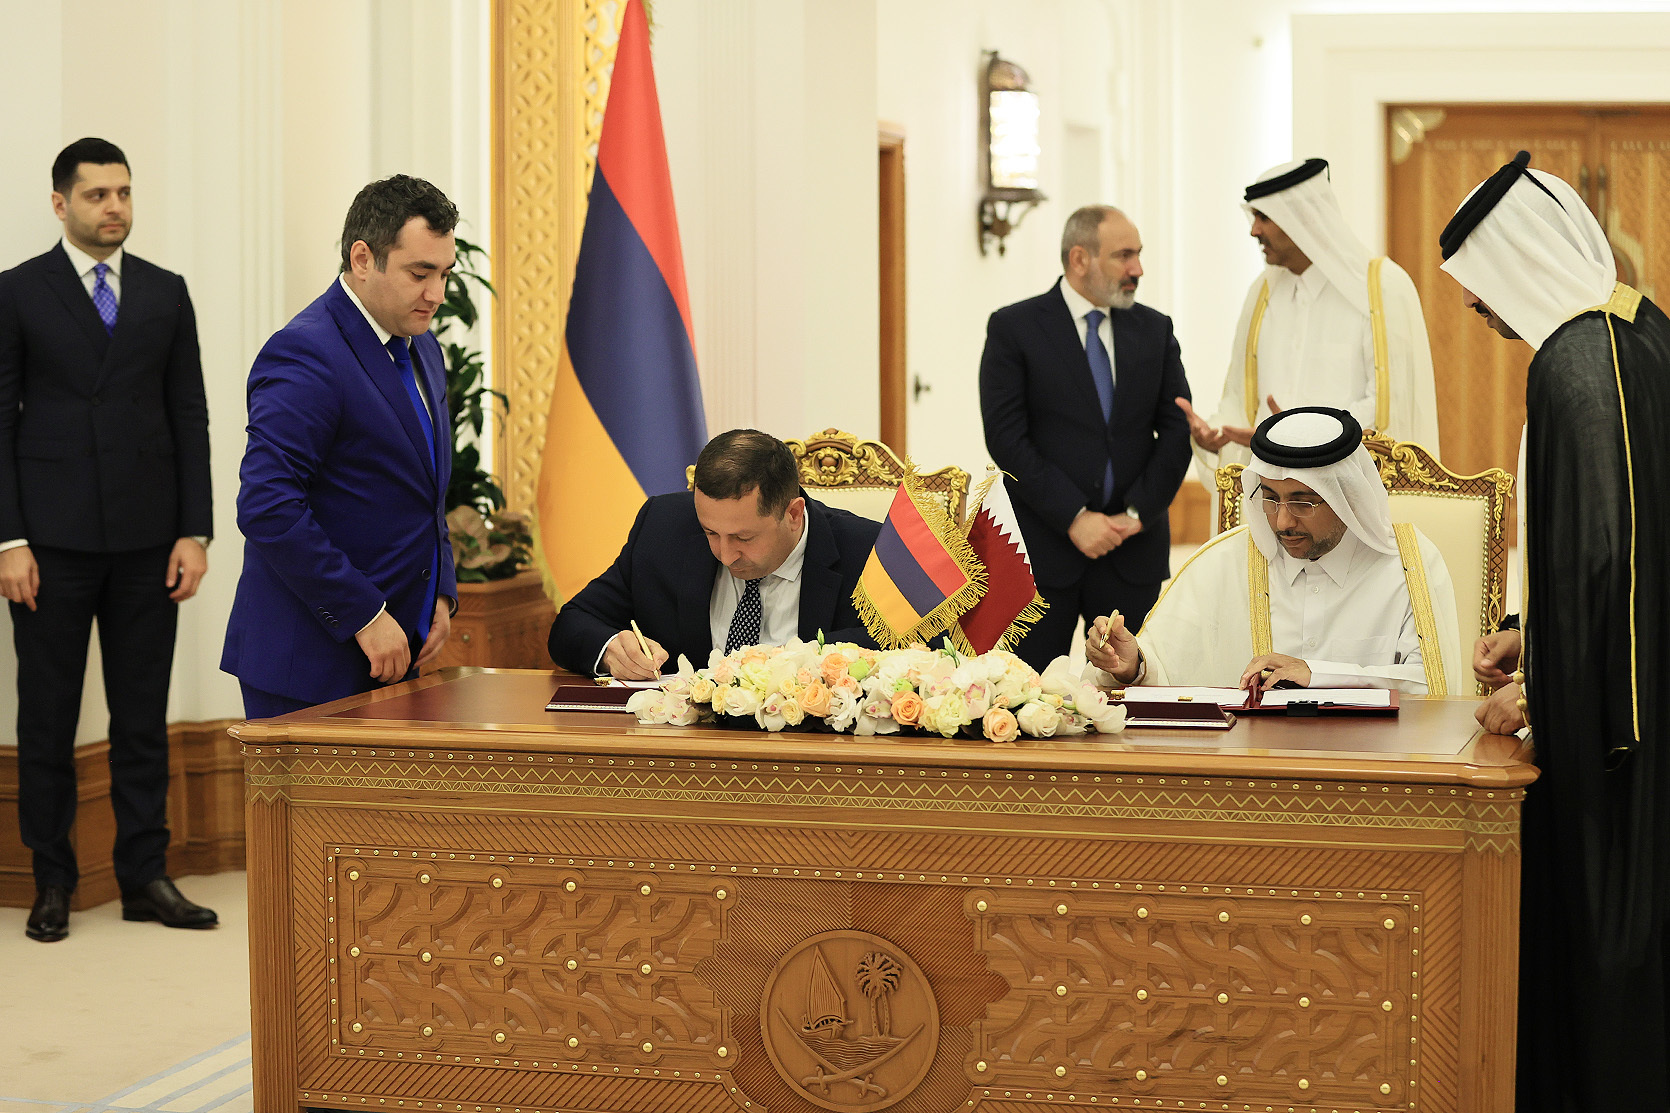 Հայաստանի և Կատարի վարչապետների հանդիպման արդյունքներով ստորագրվել են համագործակցության մի շարք փաստաթղթեր